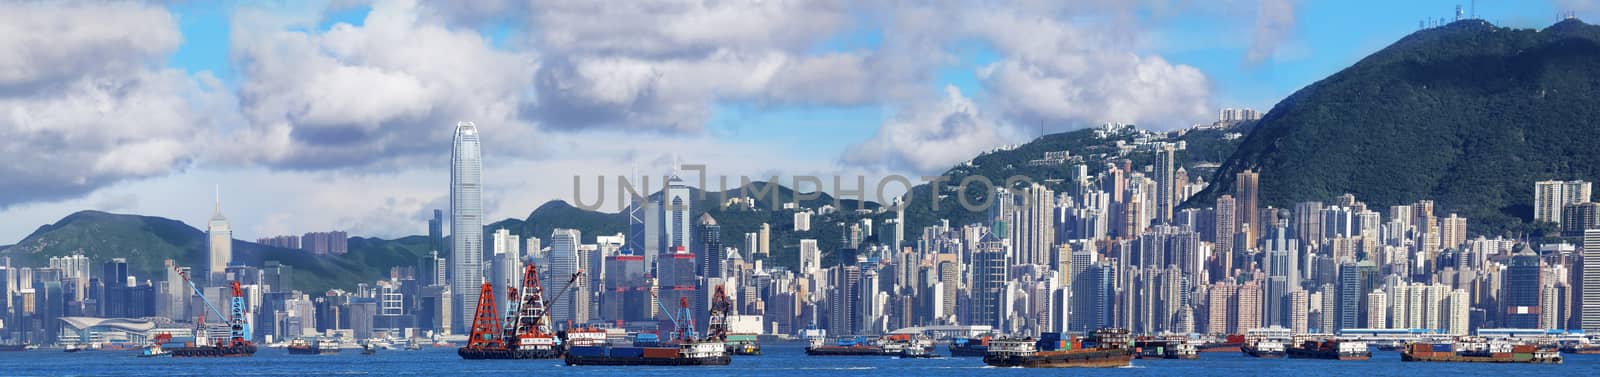 hong kong panoramic by cozyta